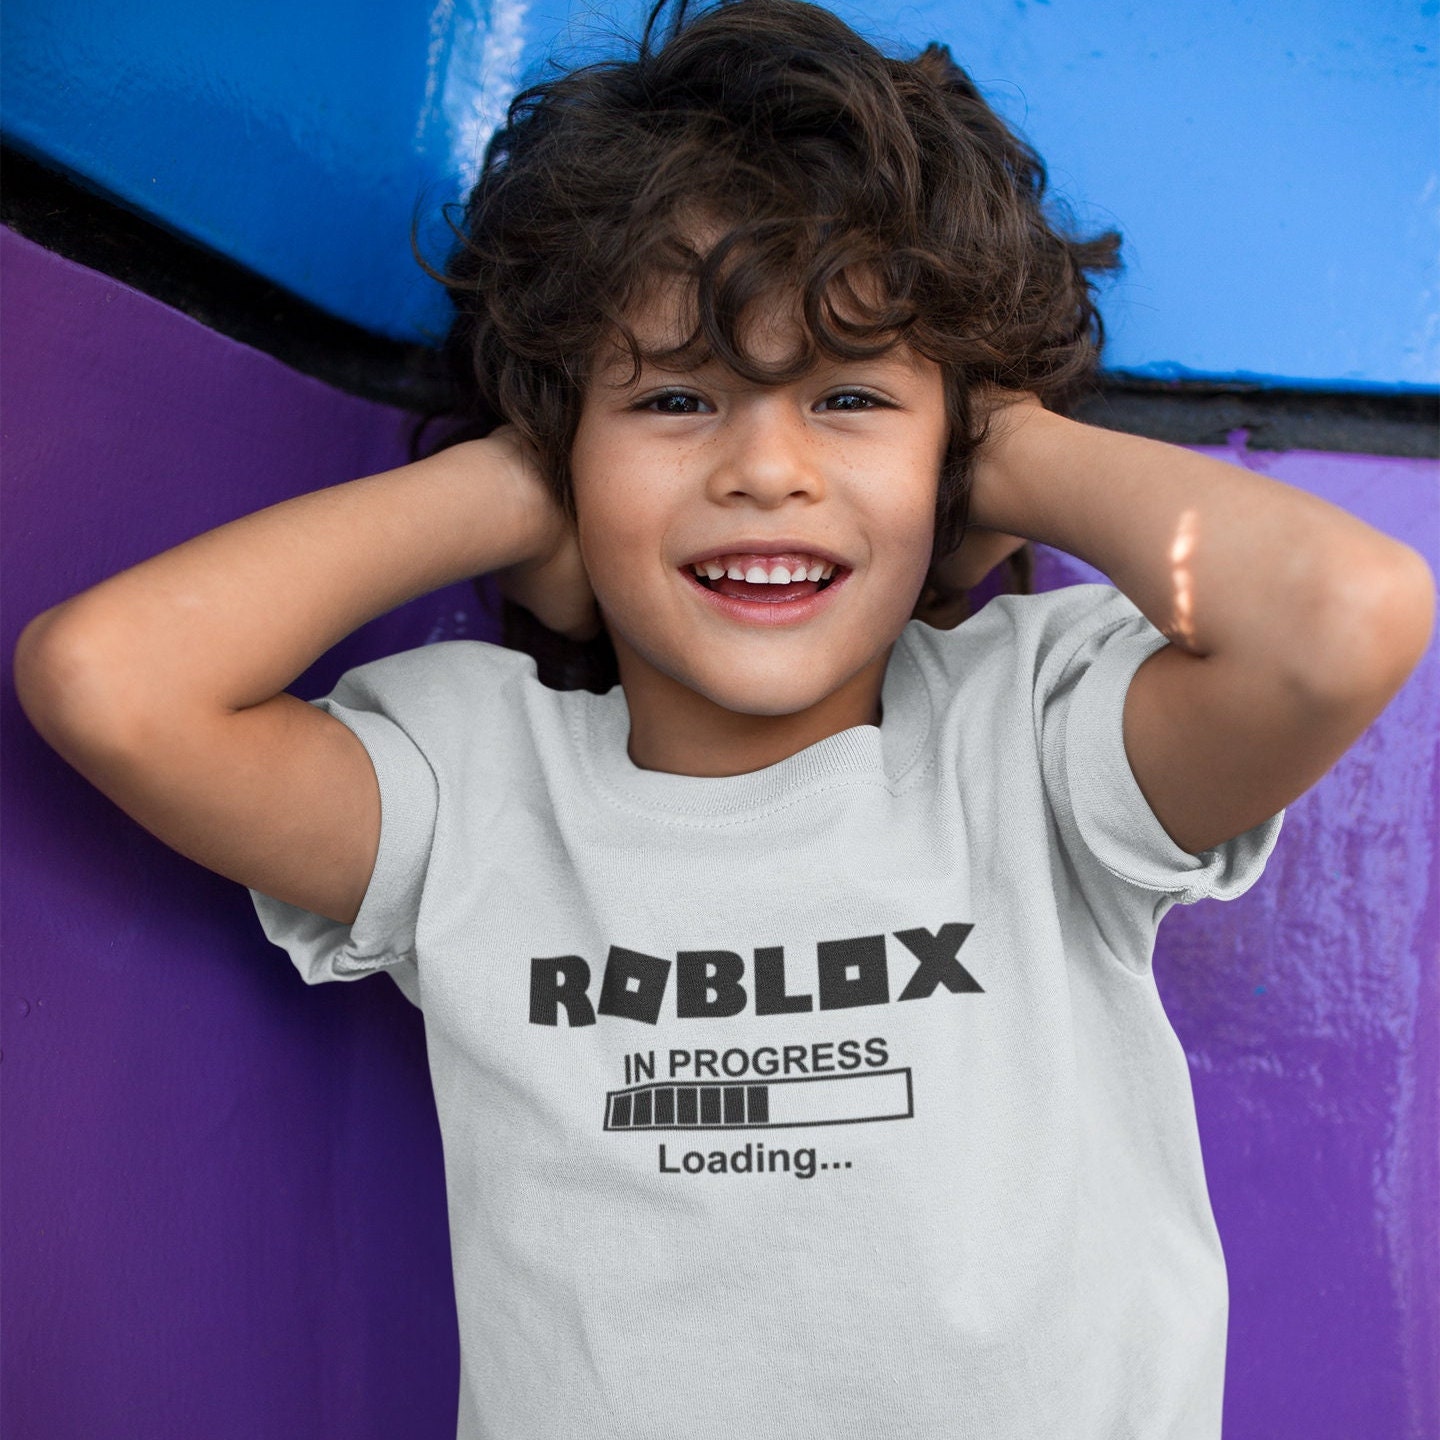 ROBLOX LOGO DESIGN T-SHIRT GAMING GAMER XBOX BOYS GIRLS ADULT XMAS BIRTHDAY